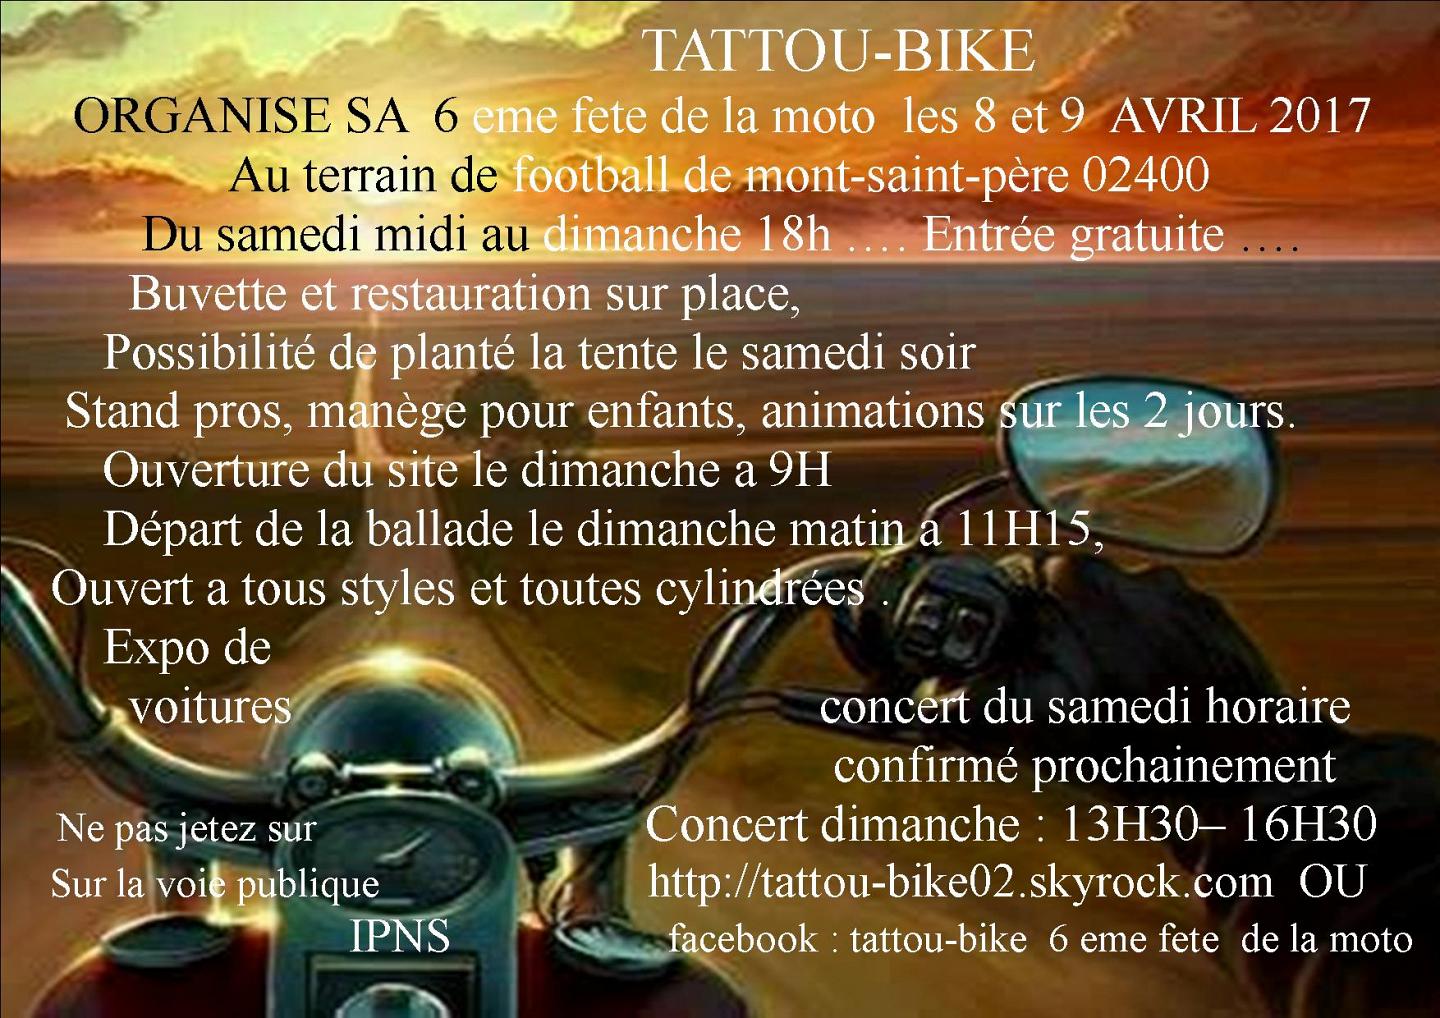 Fête de la moto du Tattou Bike à Mont-Saint-Père (...)